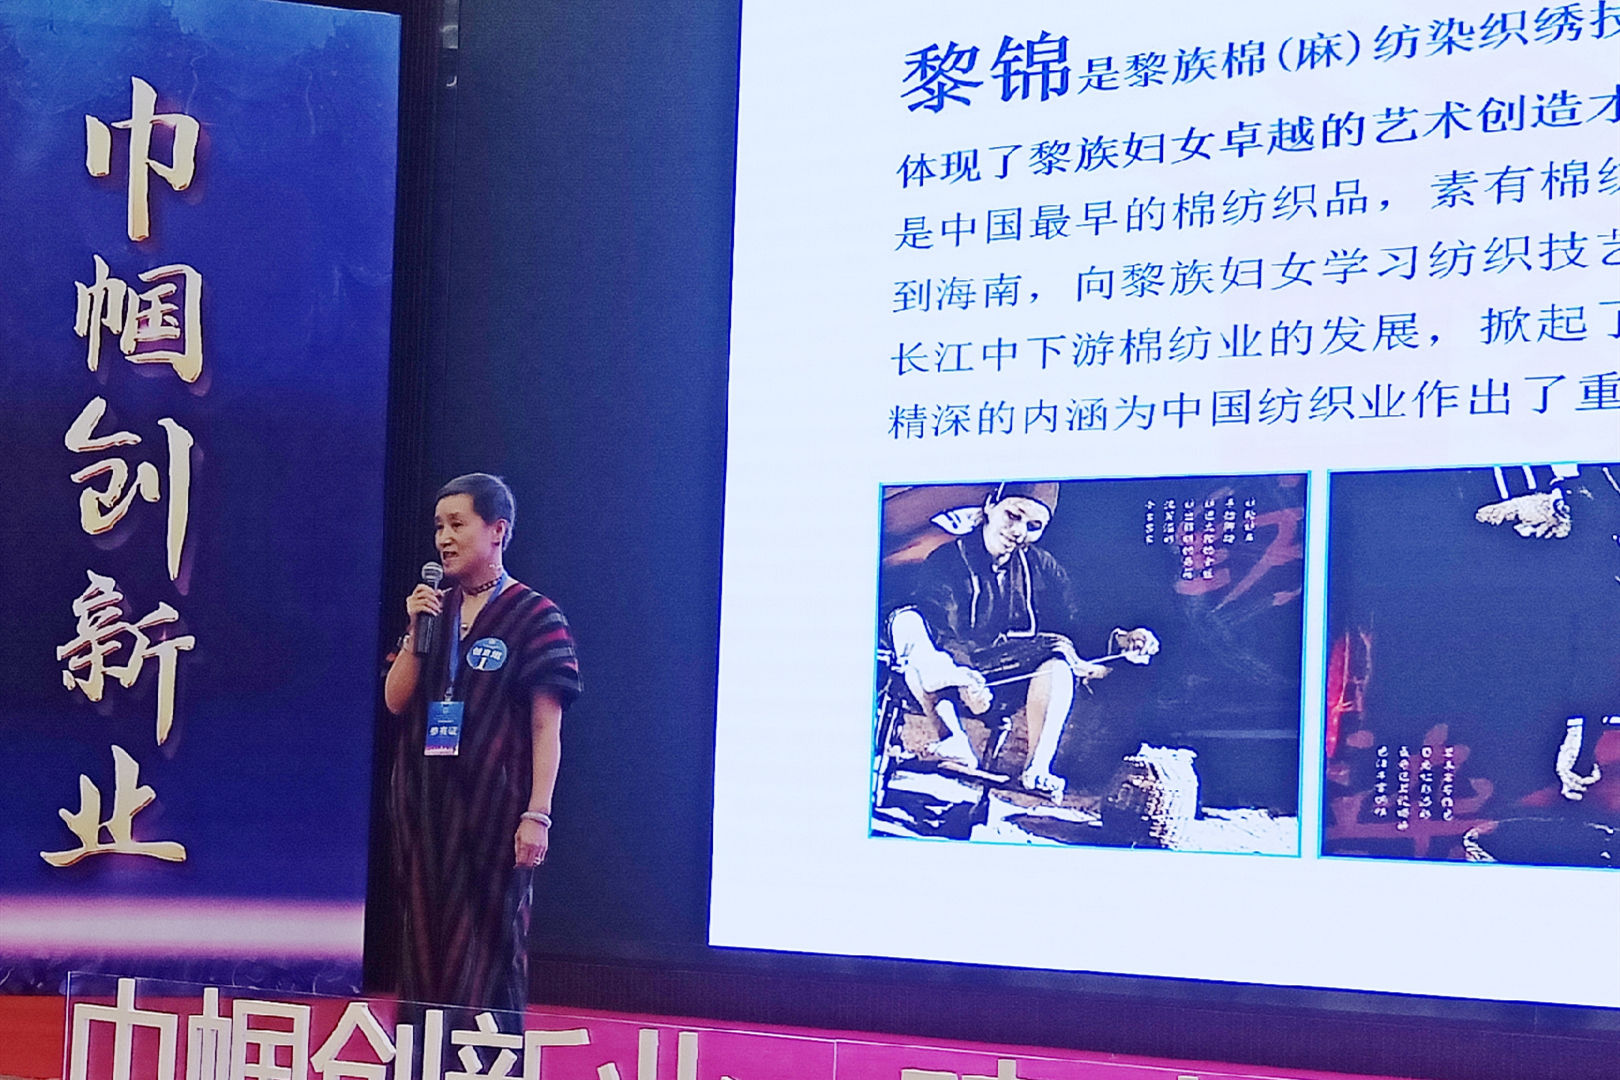 热烈祝贺锦绣织贝在中国妇女手工创业创新大赛南部赛区胜利入围全国半决赛！